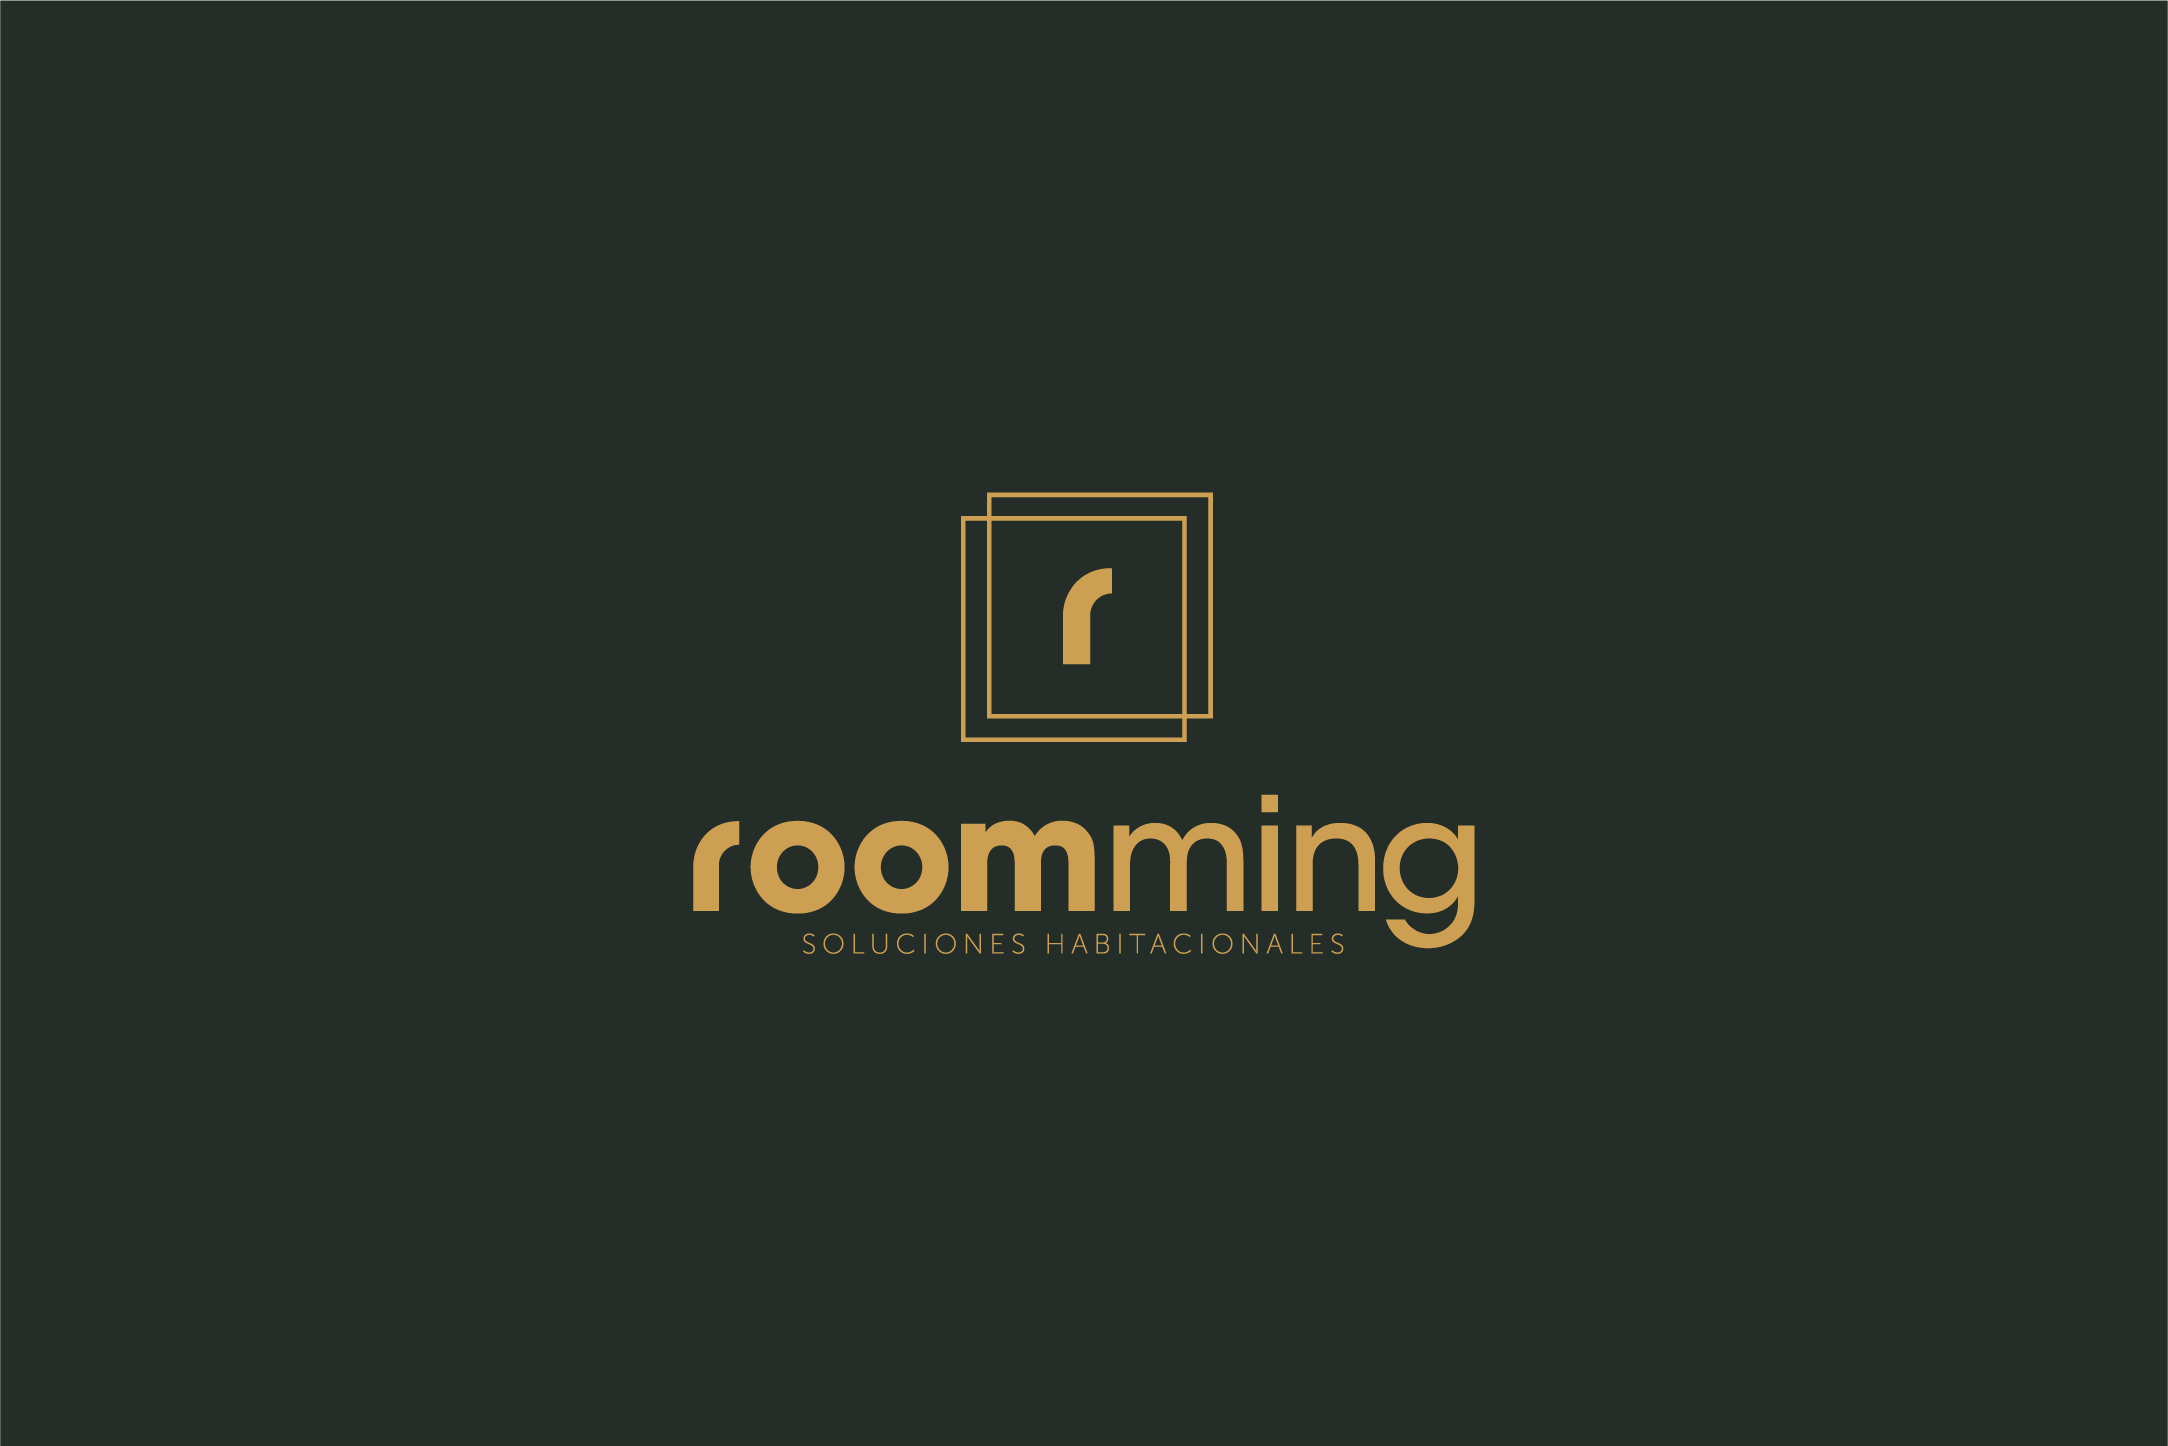 logo roomming fondo verde 2